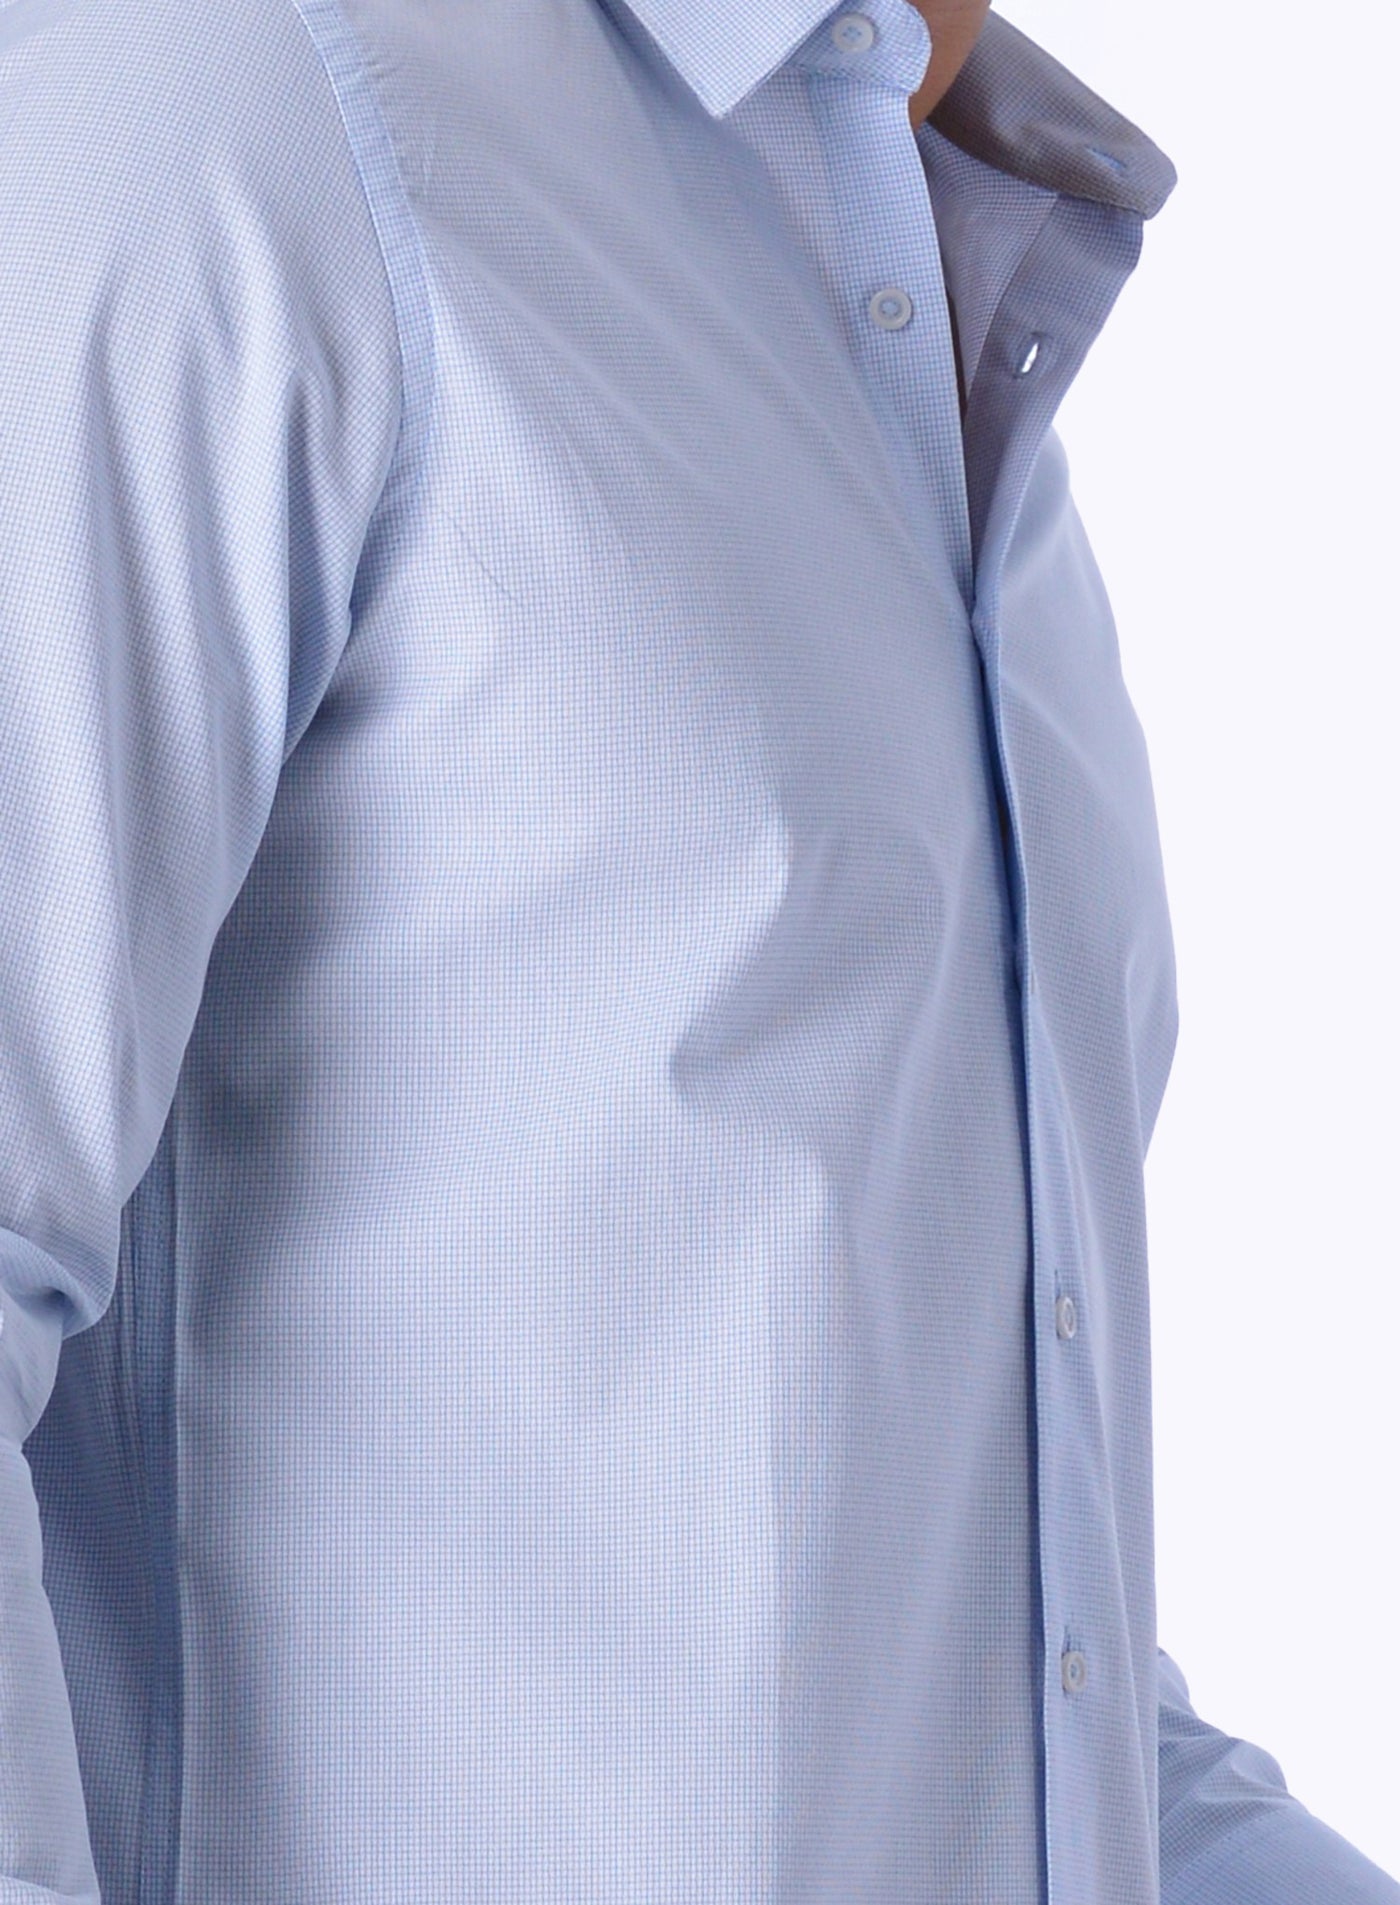 Daniel Hechter Men's Checkered Long Sleeve Shirt